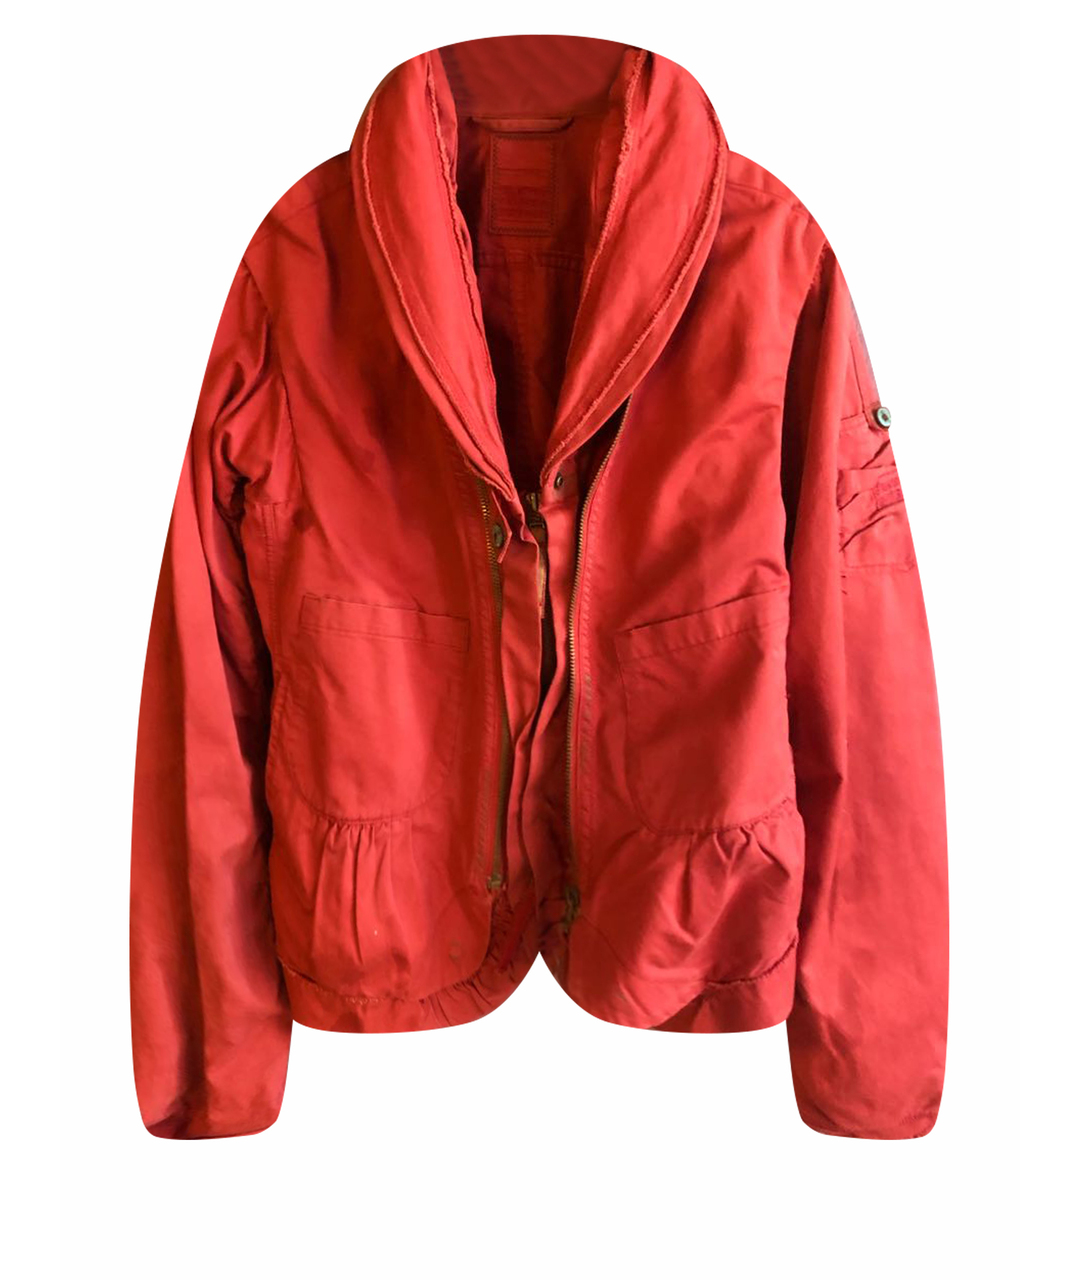 MARITHE FRANCOIS GIRBAUD Бордовый хлопковый жакет/пиджак, фото 1